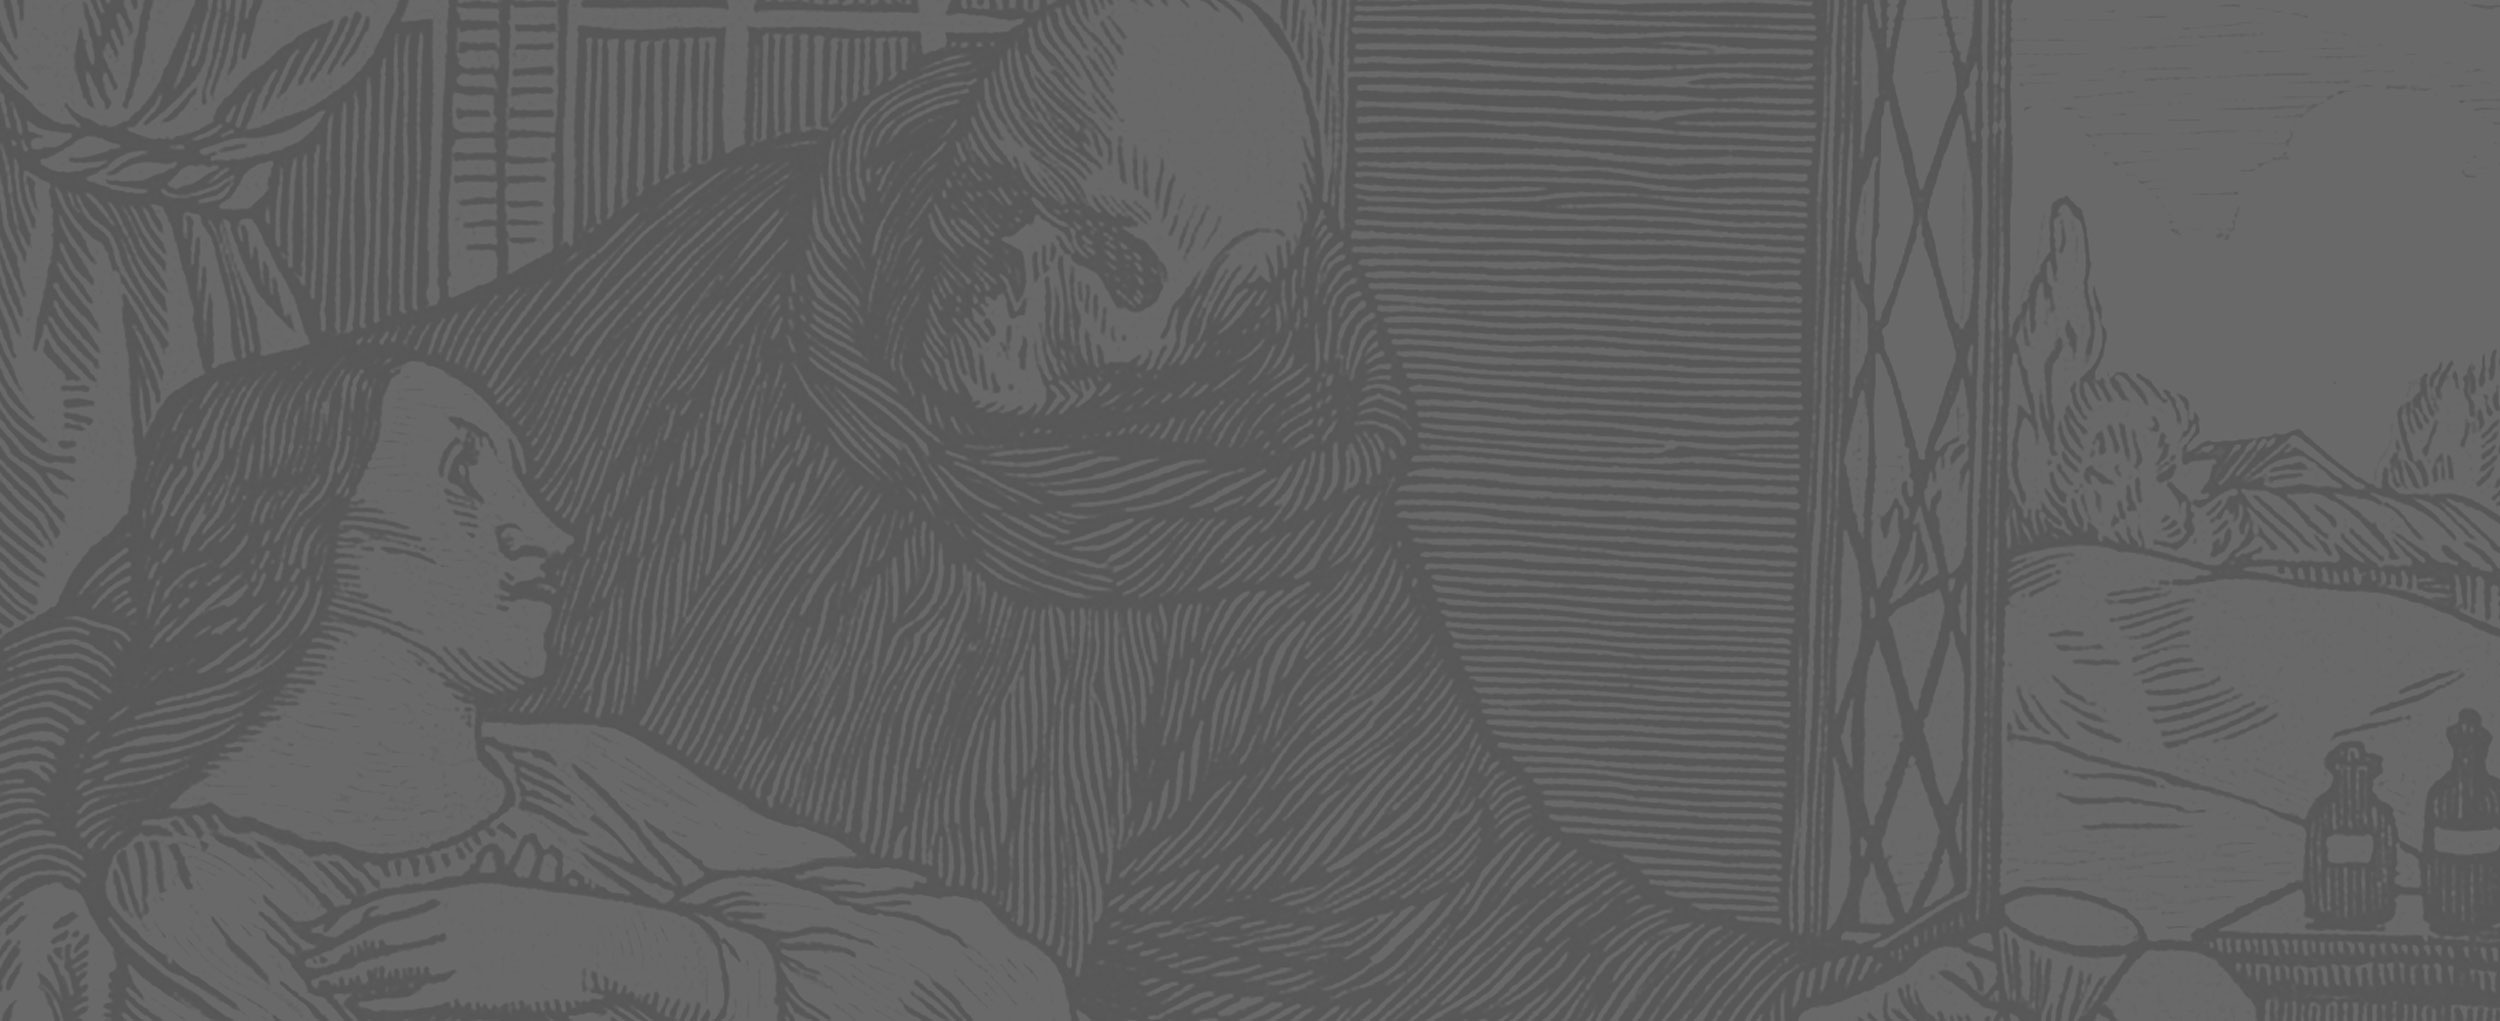 I Curso Imago Mortis – Imagen y memoria: representando la muerte y el duelo